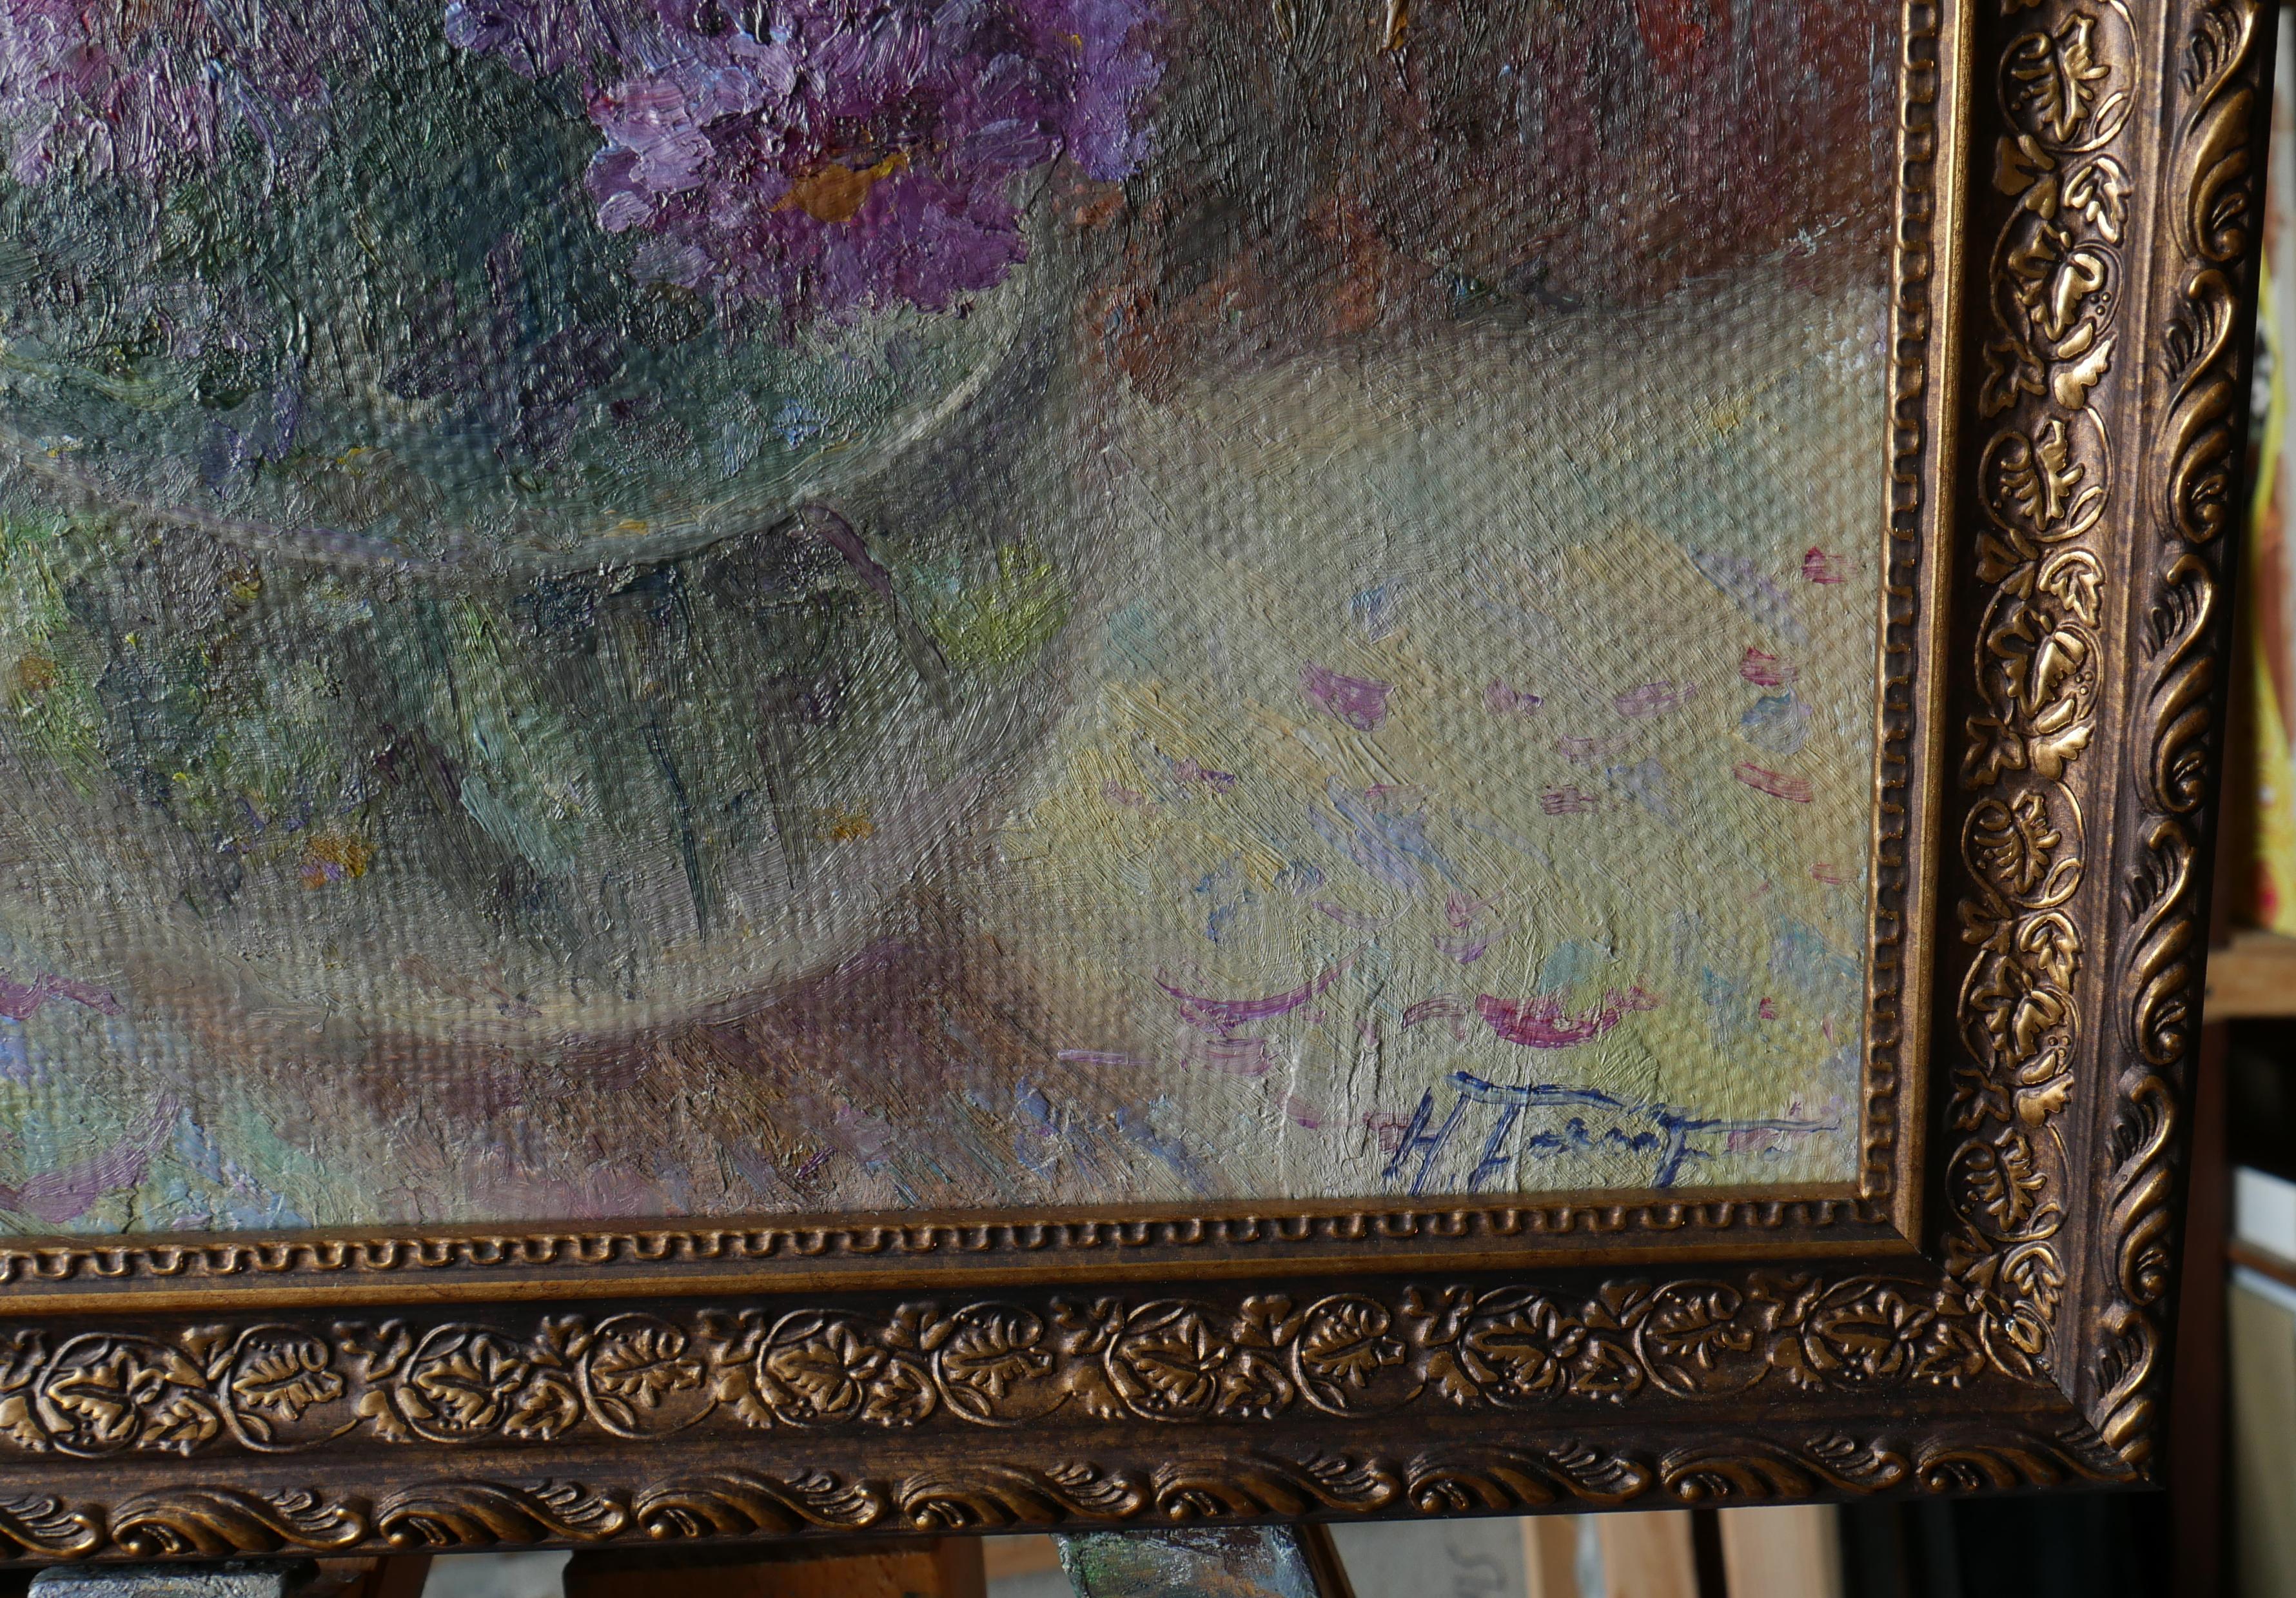 Gemälde mit lila Blumen ist eine schöne Wanddekoration, Oktoberblumen sind eine der Lieblingsblumen des Künstlers, er versucht immer, ihre Schönheit und Luxus zu zeigen. Außerdem mag Nikolay verschiedene Lila-Töne.

Das Gemälde ist 100% handgemalt